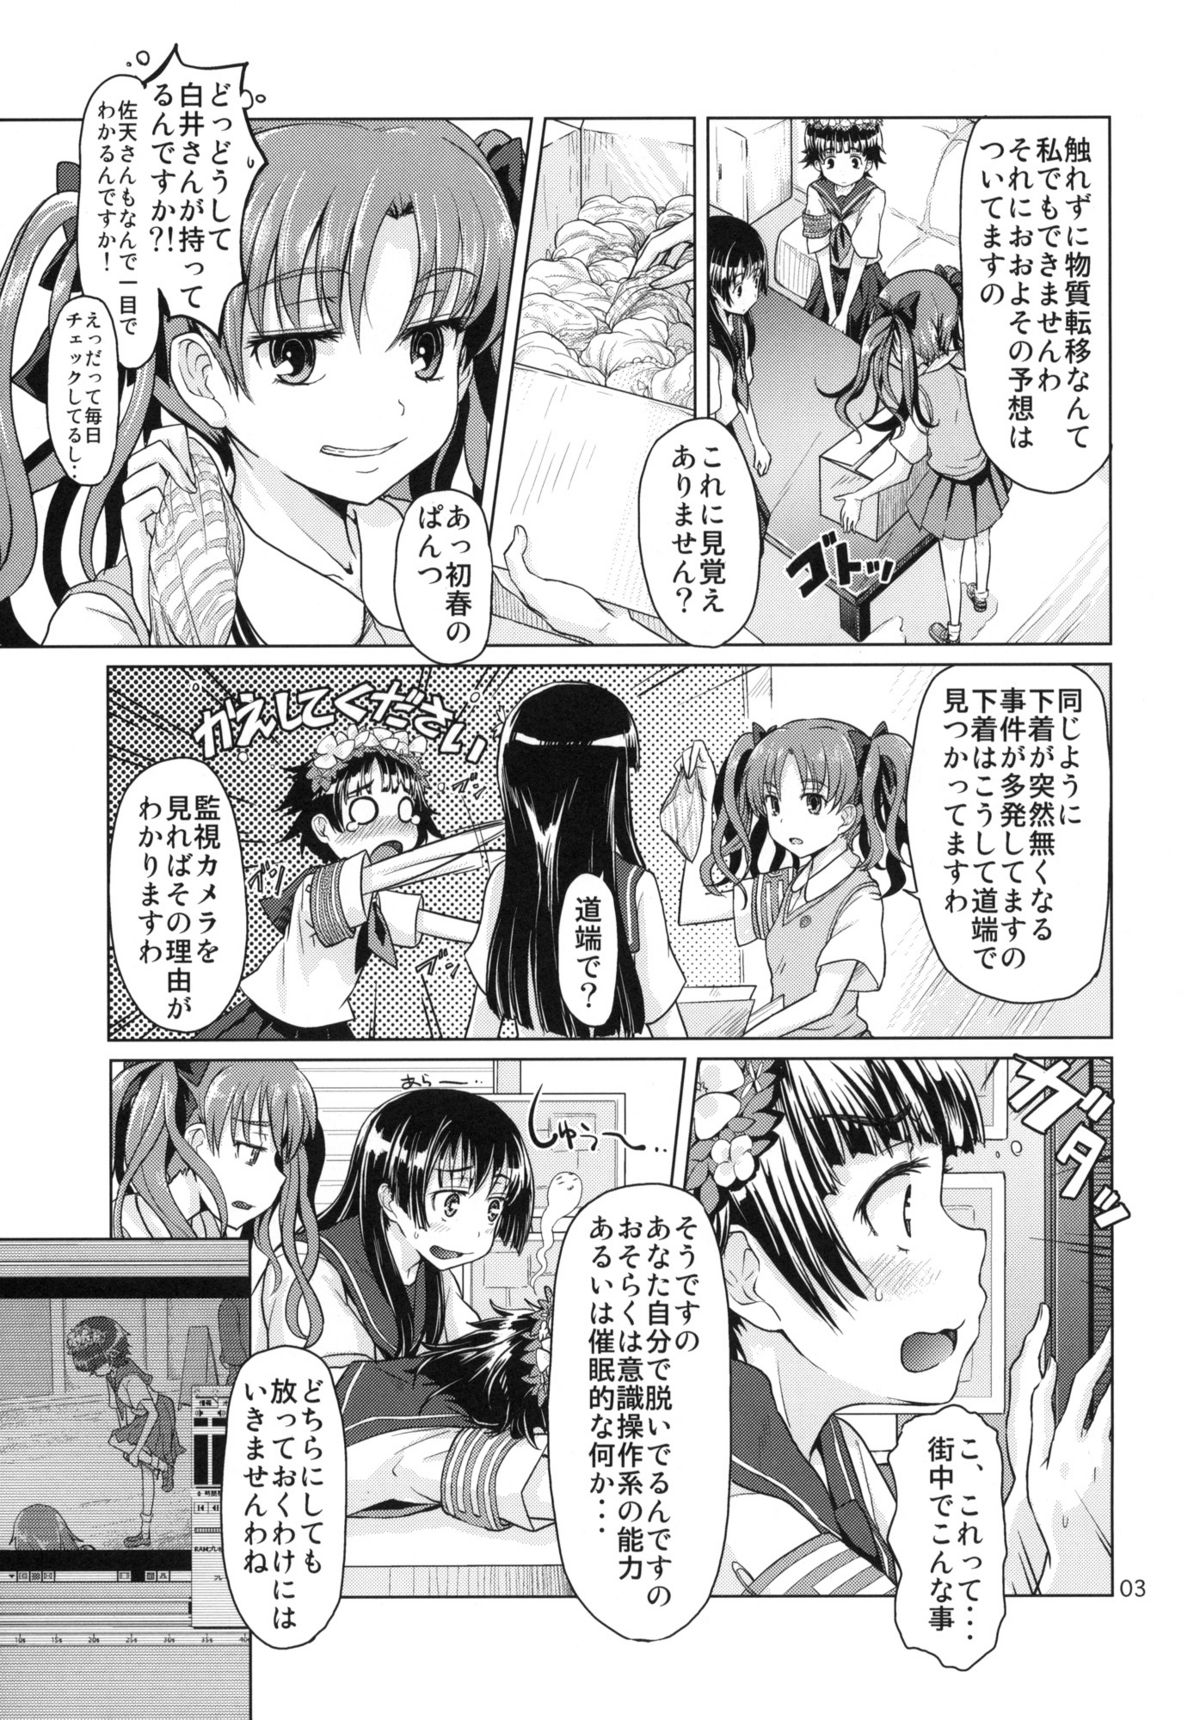 [MMU2000 (Mishima Hiroji)] i.Saten (Toaru Kagaku no Railgun) page 4 full